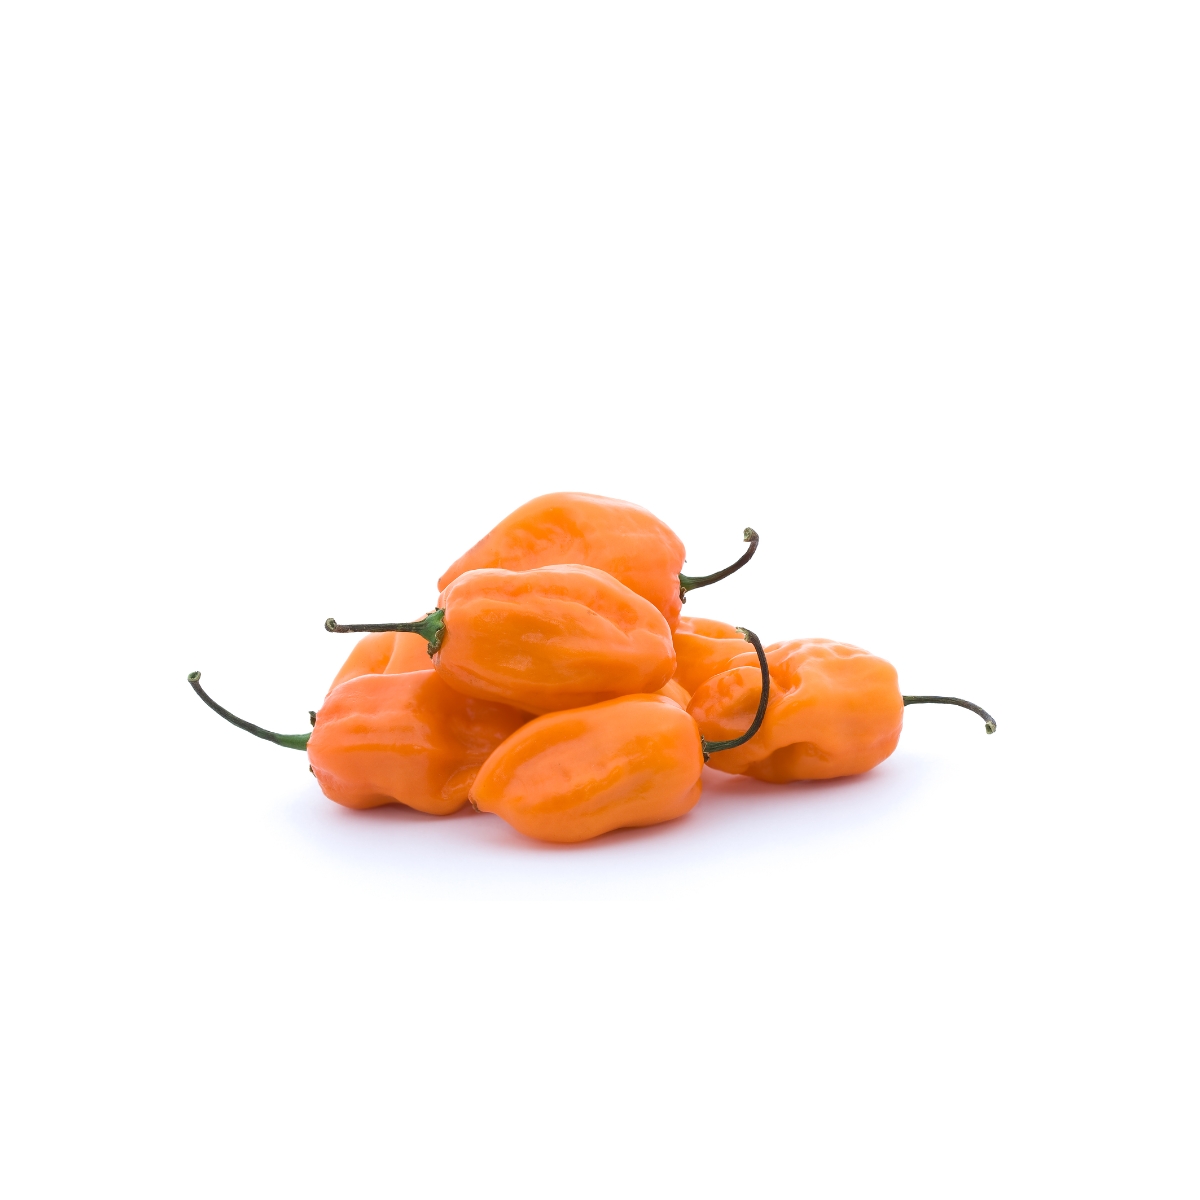 Ají / Chile Habanero Naranja fresco y en semilla